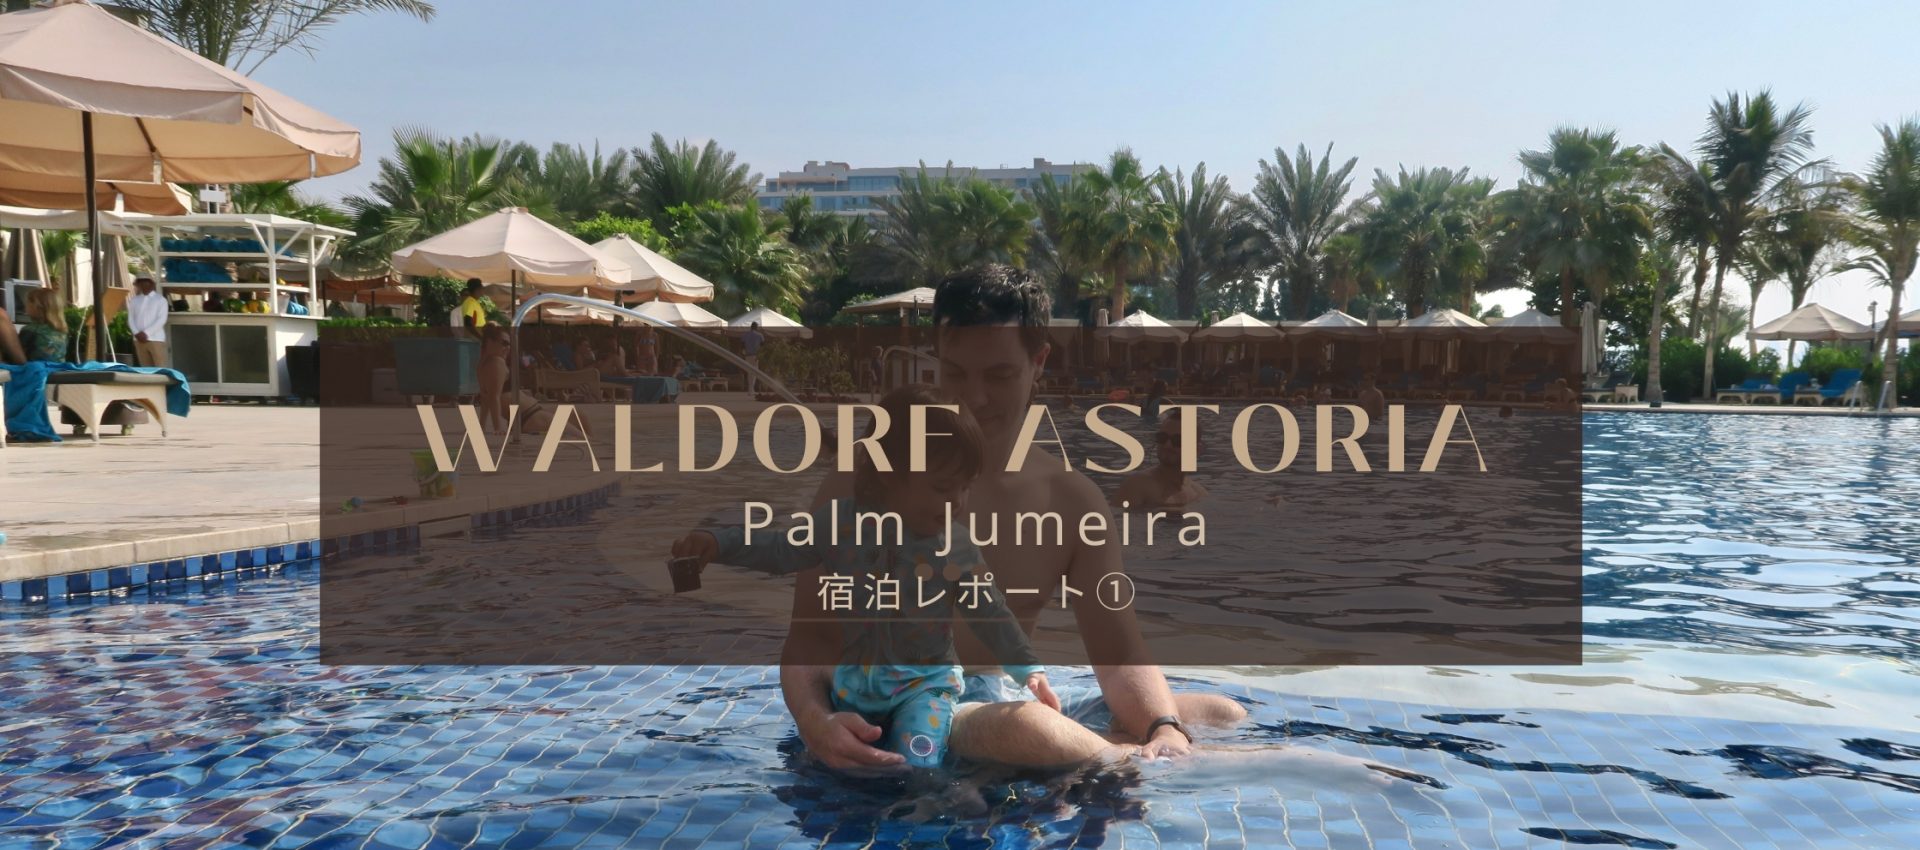 ドバイのリゾート地パルムで、五つ星ウォルドーフ アストリア に泊まってみた Waldorf Astoria Palm Jumeirah  前半